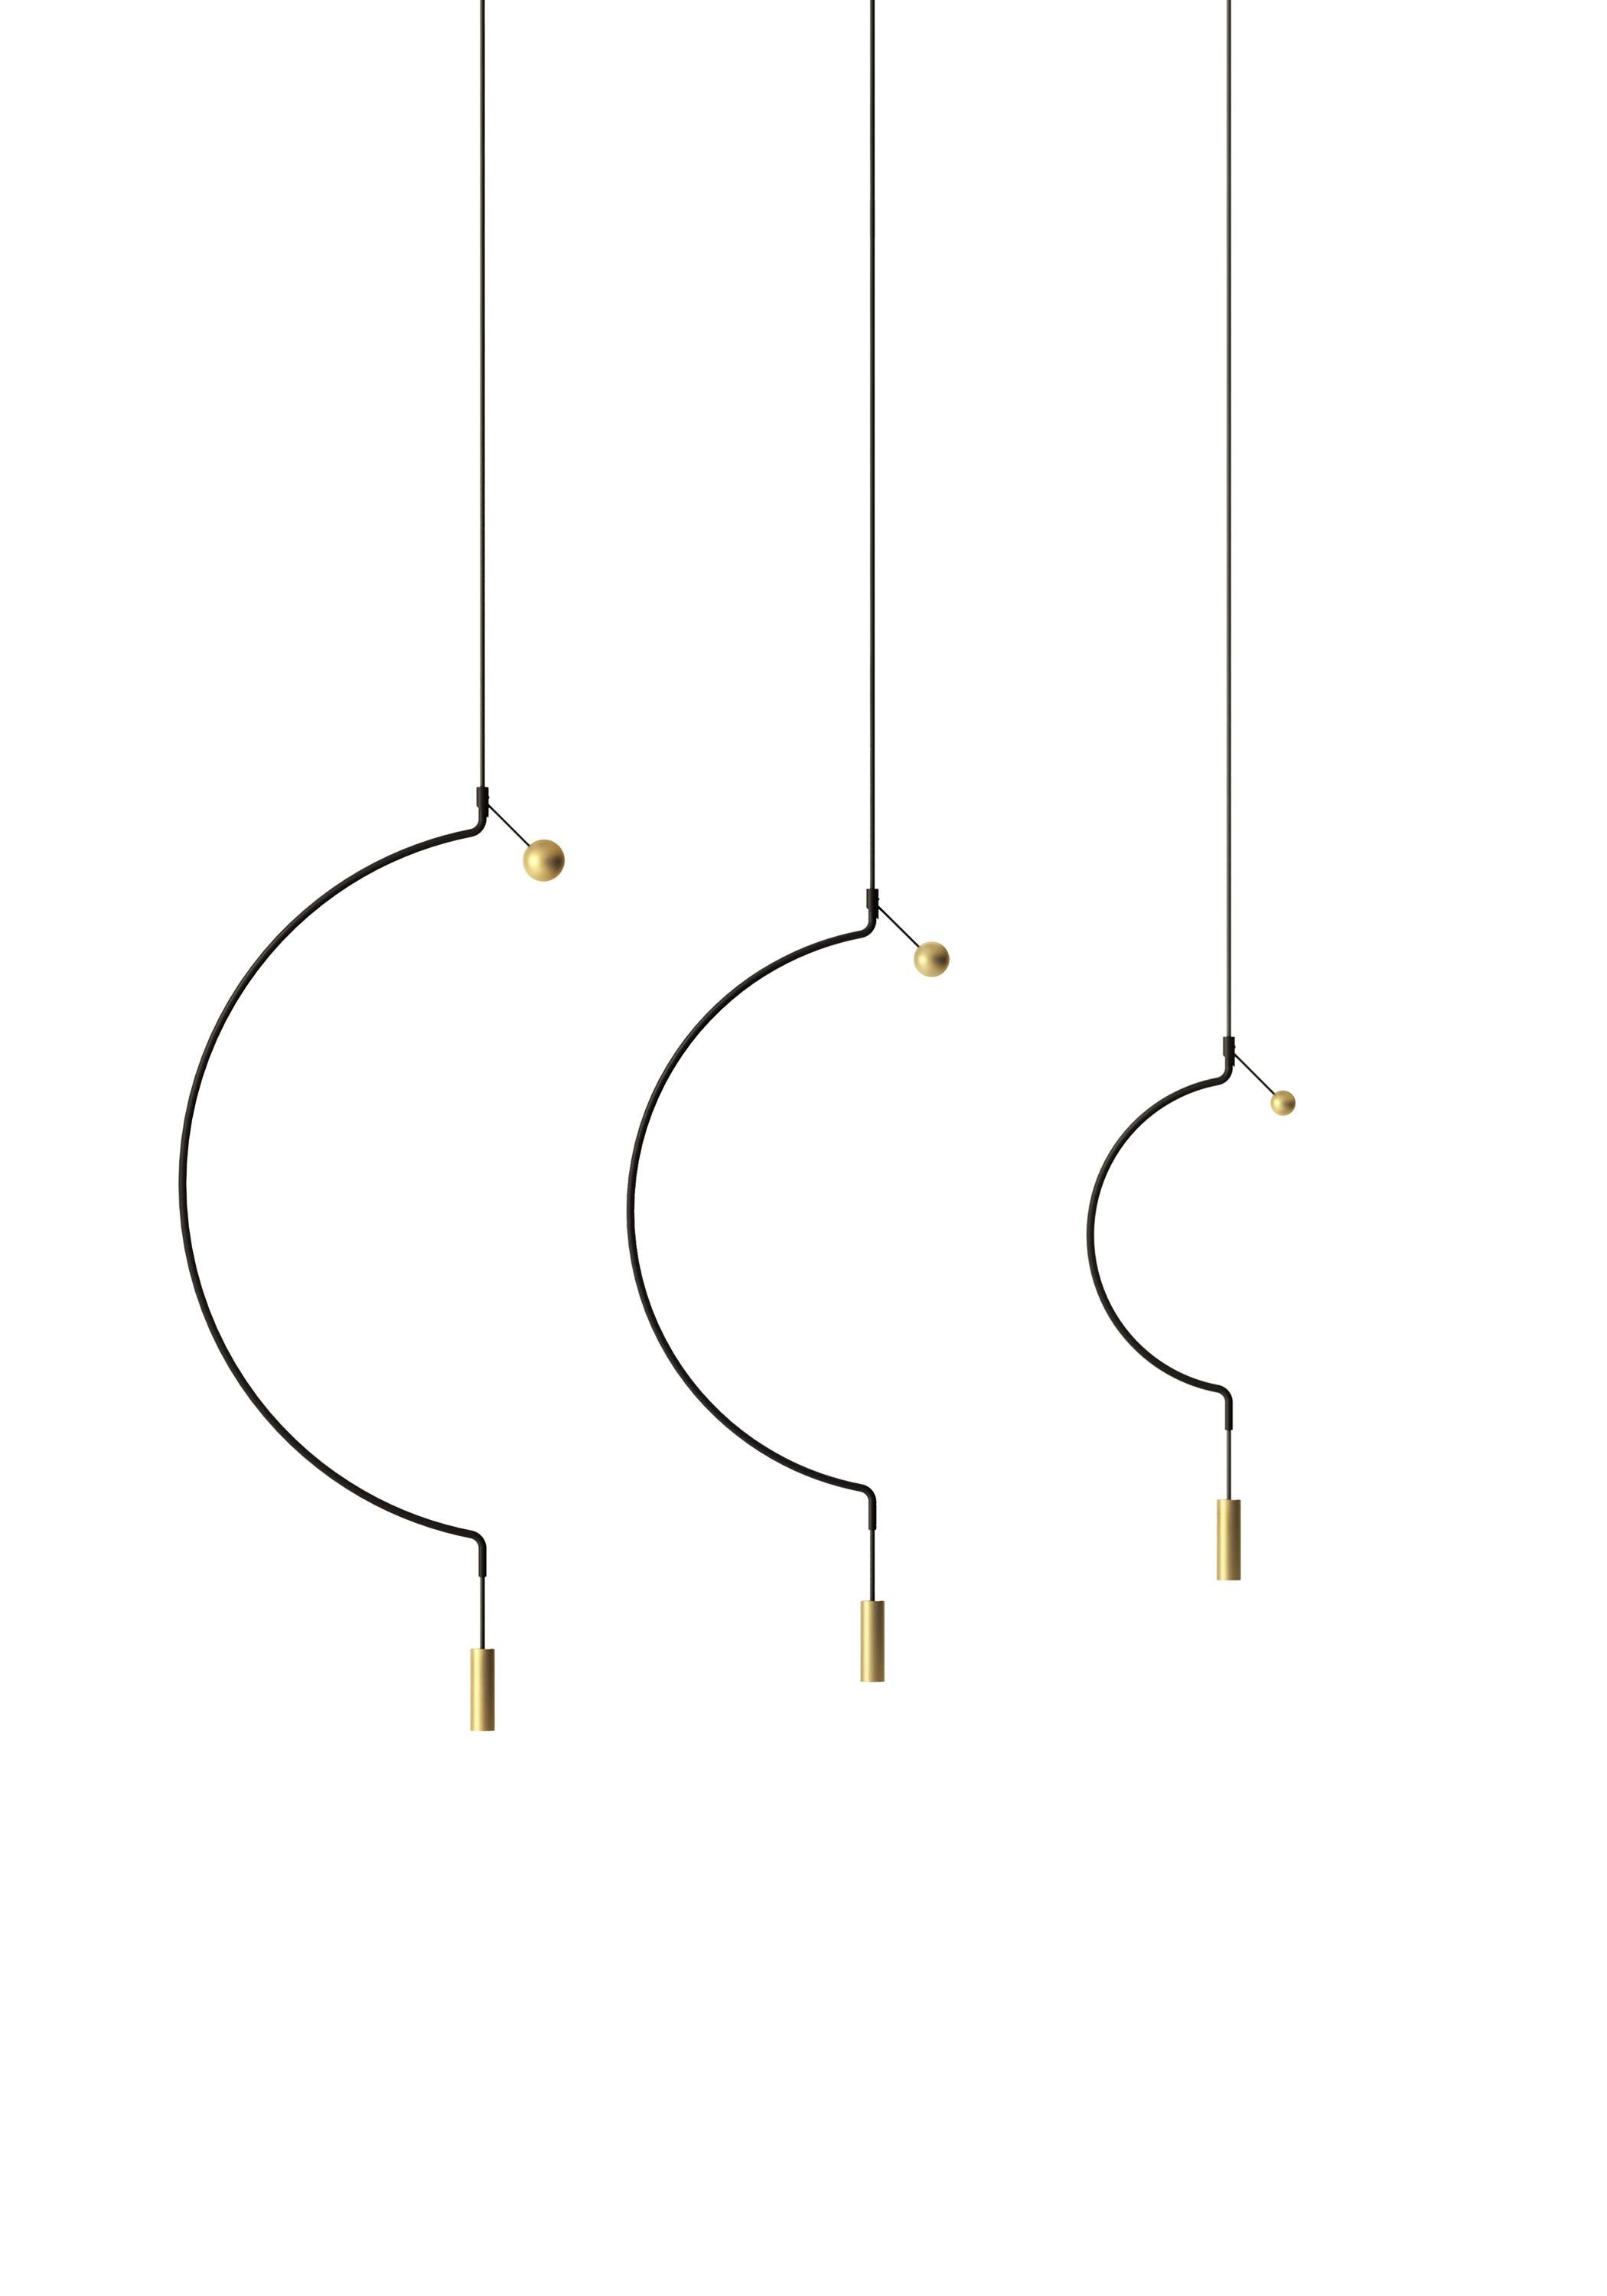 Axolight Lampe à suspension Liaison Model P1 en noir/doré par Sara Moroni

Légèreté et élégance modulaires. Liaison raconte l'équilibre parfait de trois archétypes géométriques : la sphère, le cercle et le cylindre composent un système qui inclut le